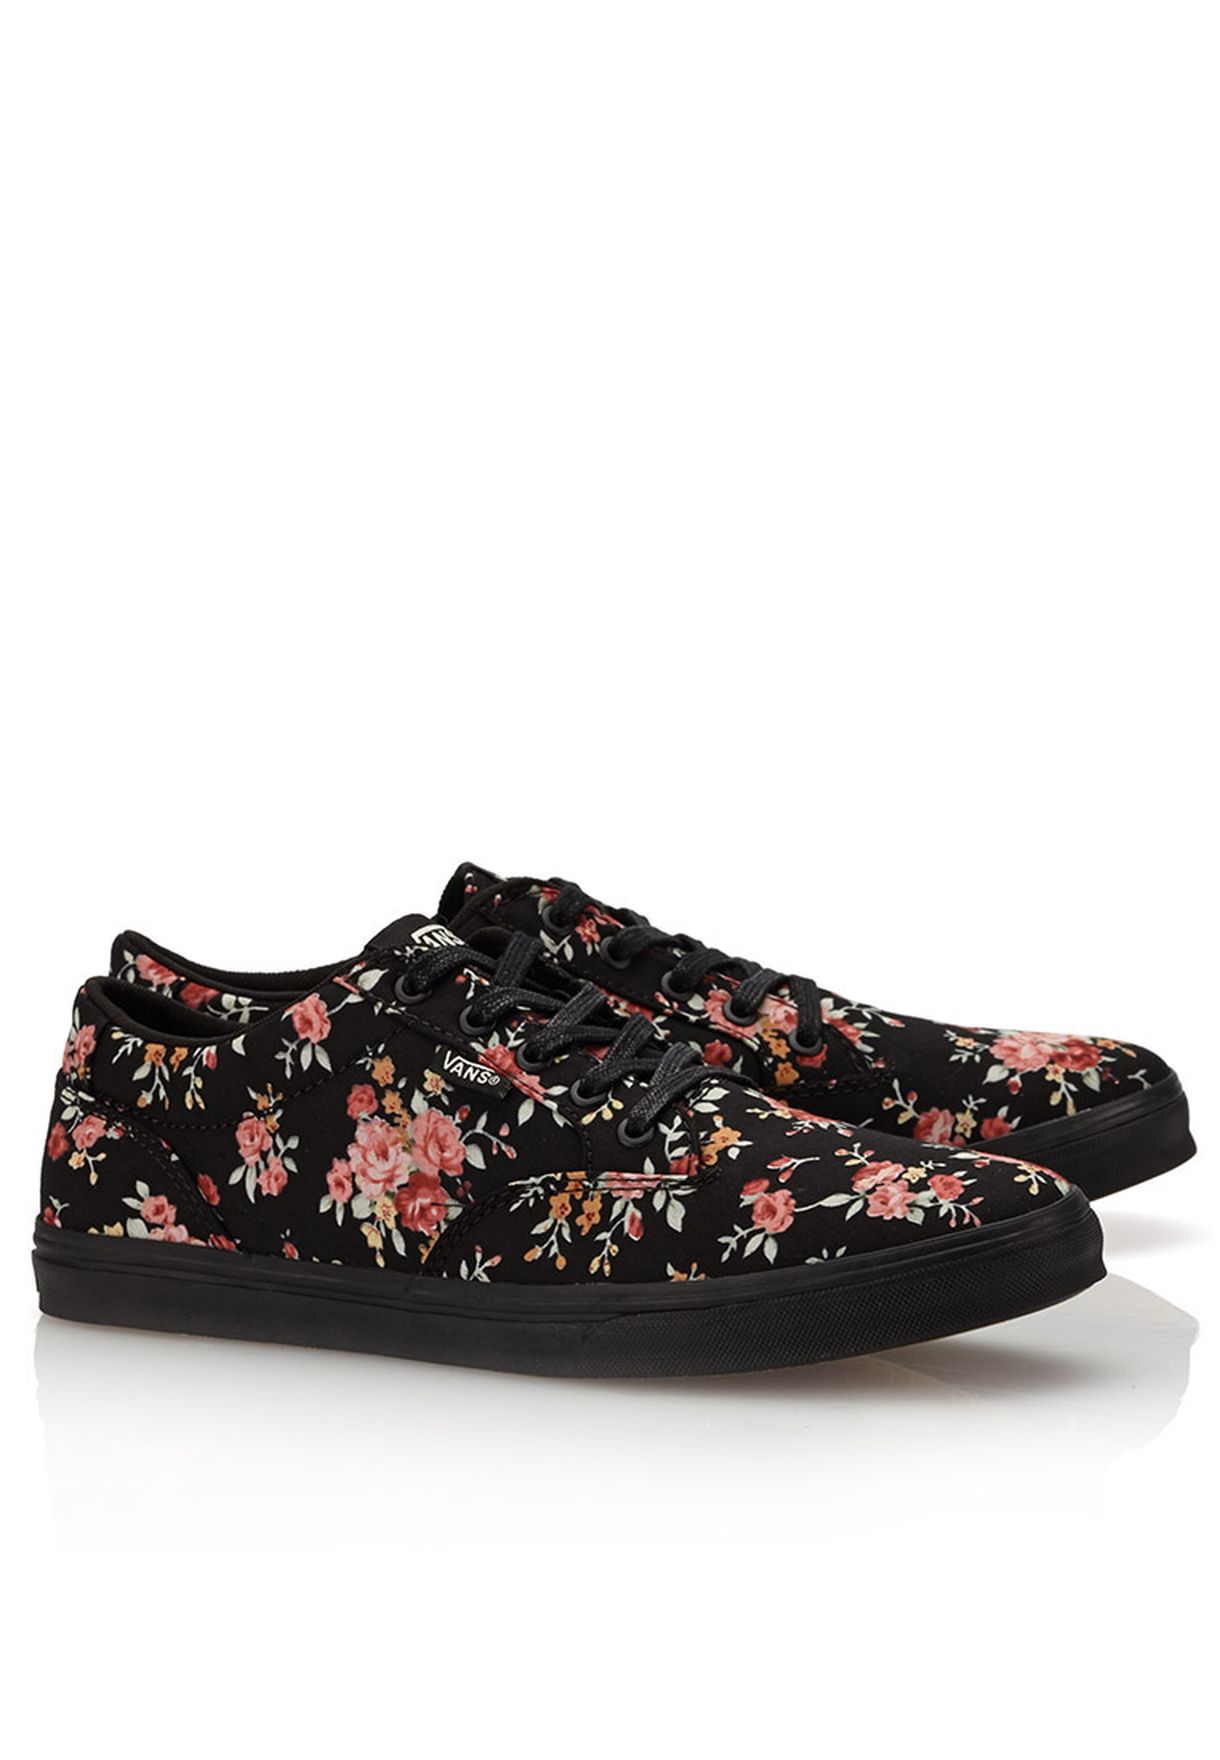 vans winston women's floral skate shoes